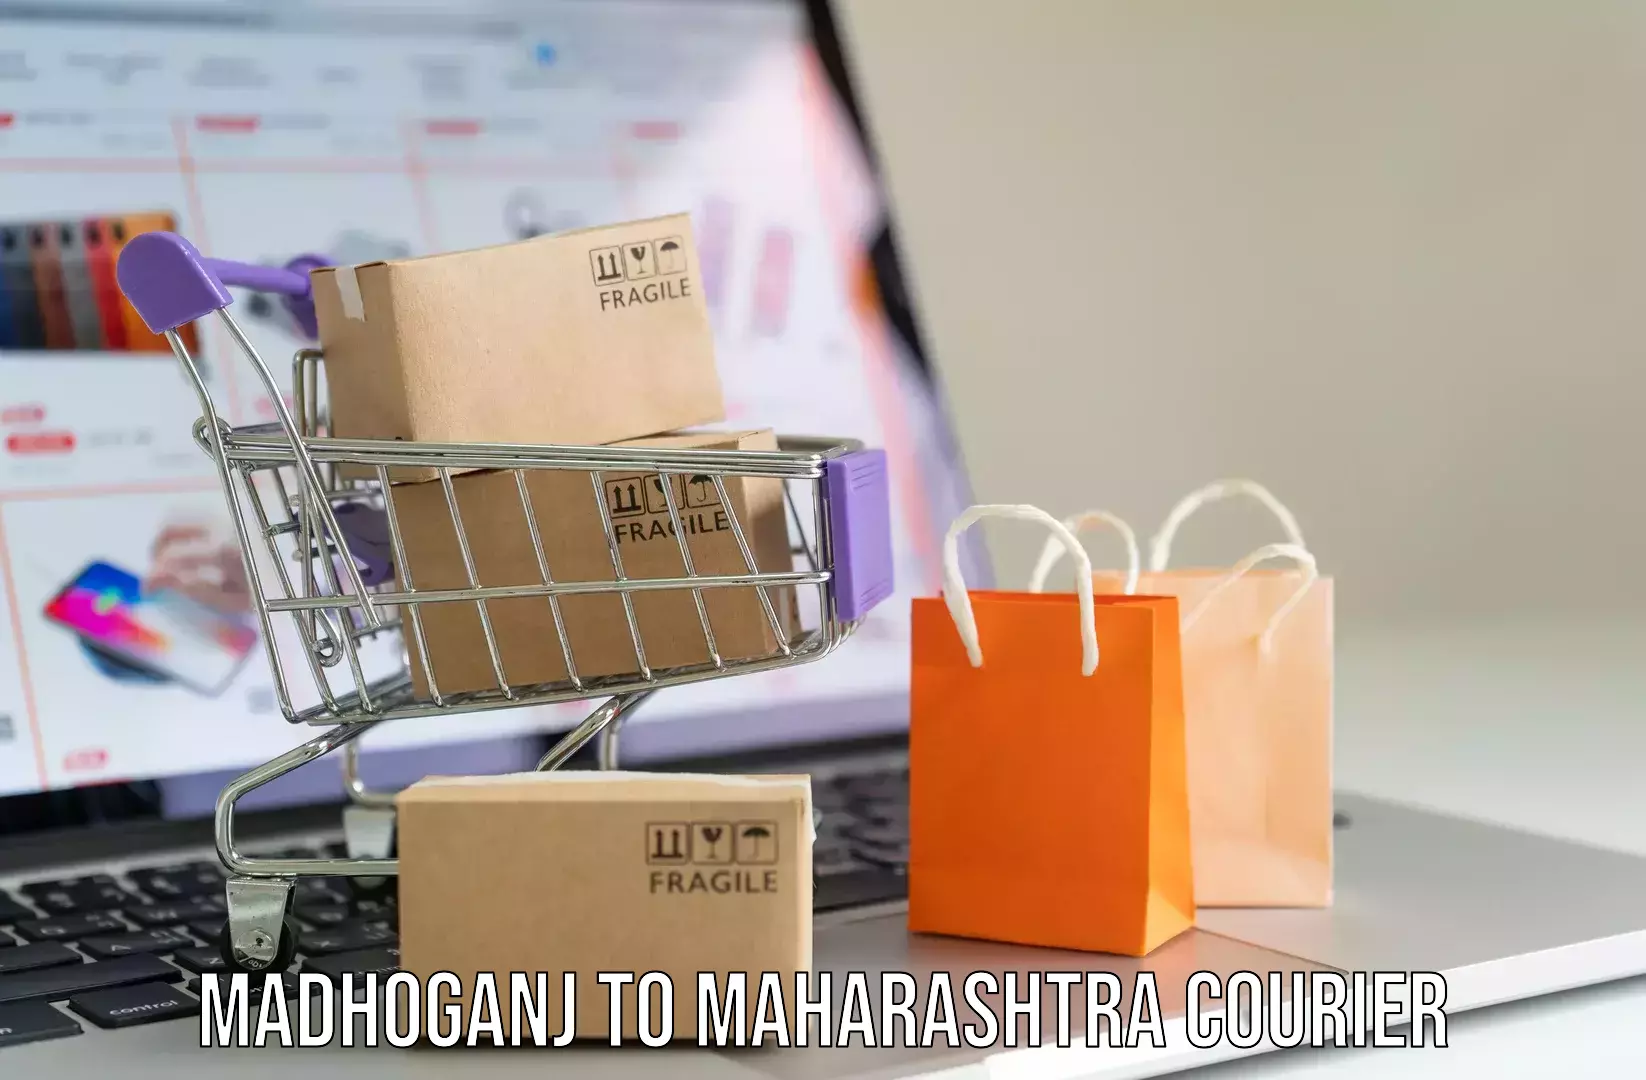 Luggage shipment specialists Madhoganj to Pathardi